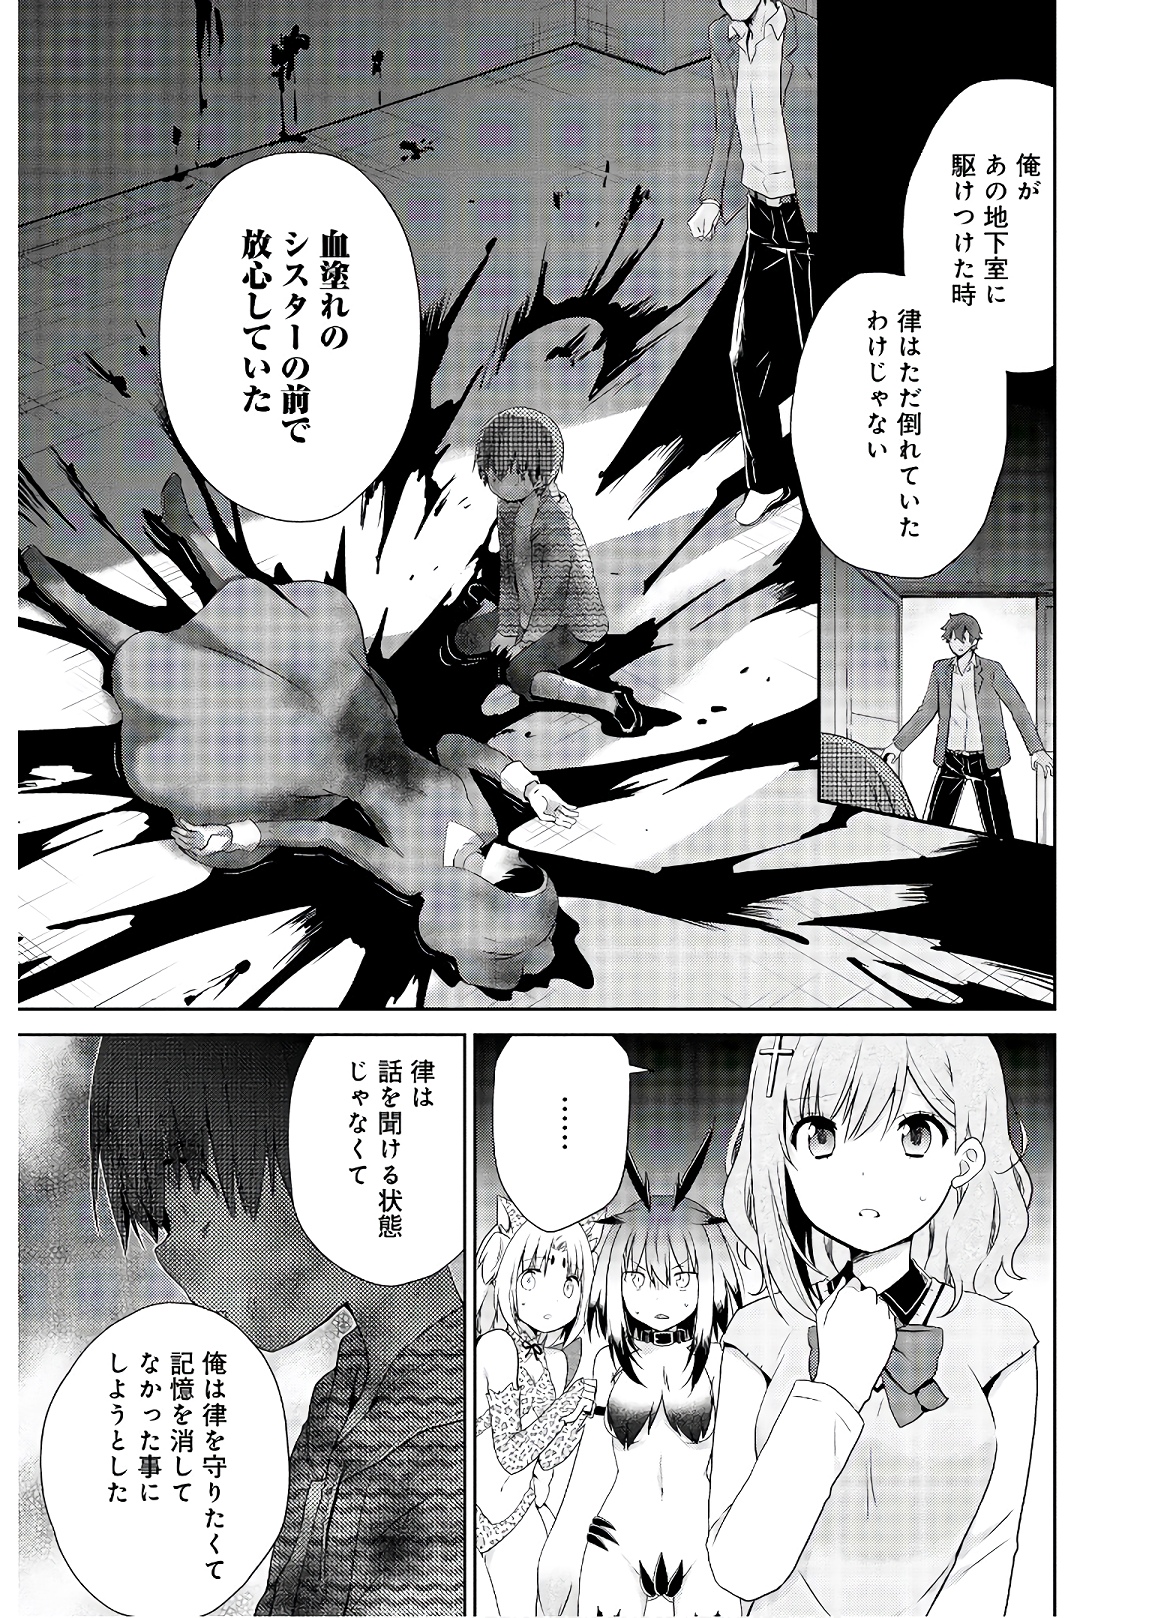 Asmodeus wa Akiramenai - Chapter 47 - Page 3